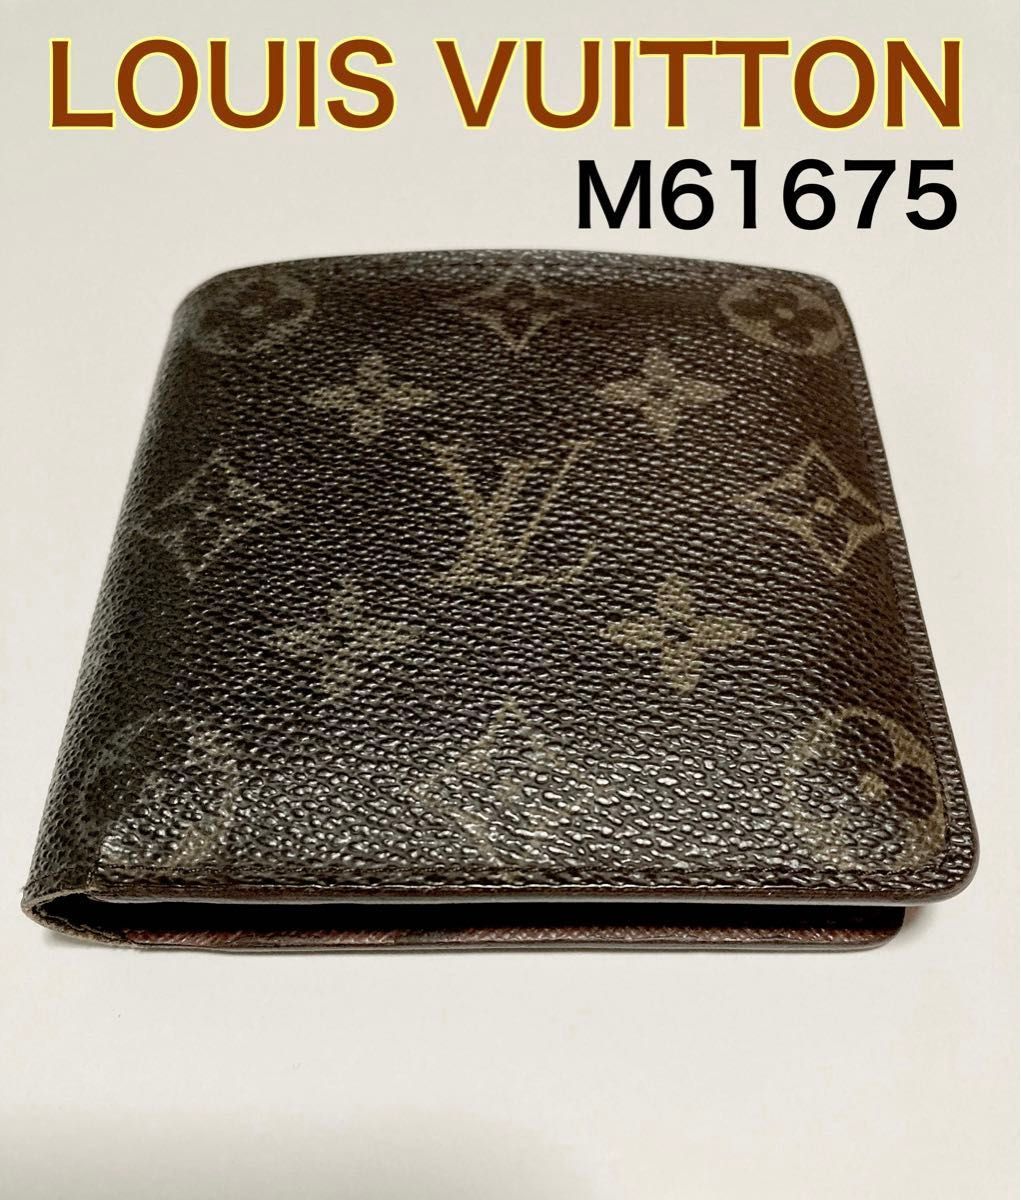 LOUIS VUITTON ルイヴィトン 財布 モノグラム ポルトフォイユ マルコ M61675 二つ折り財布